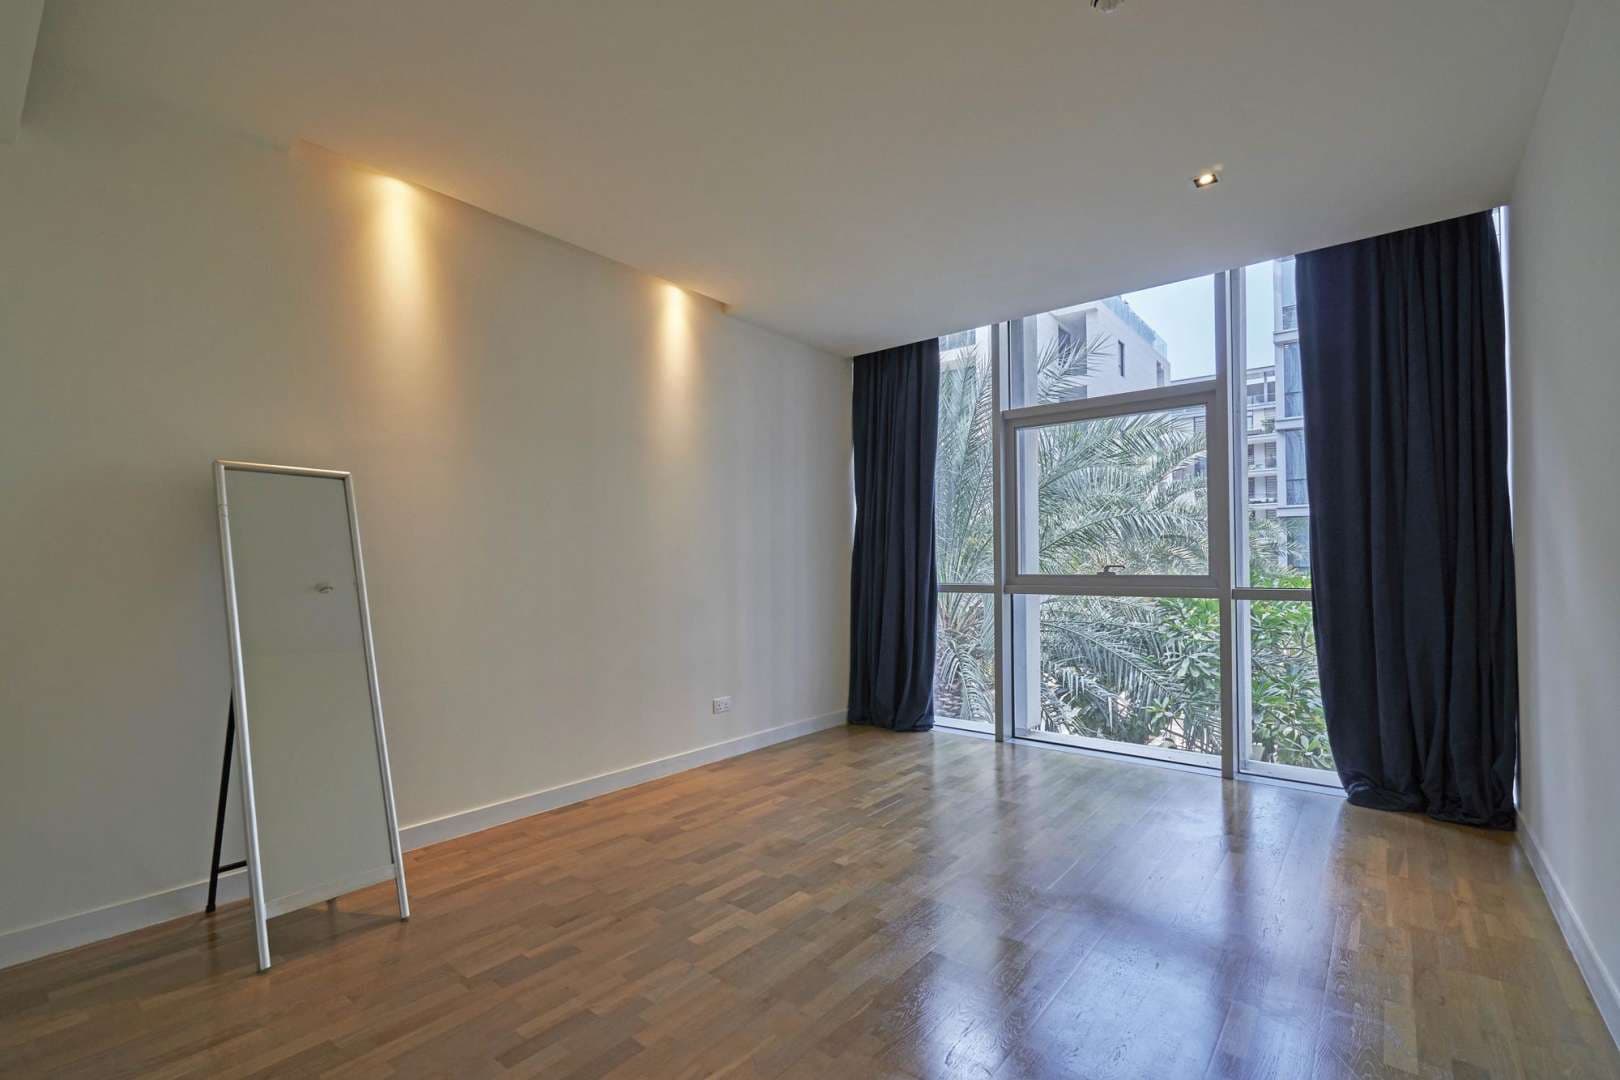 3 Bedroom Apartment For Rent Central Park Lp05483 180f6caf64b21600.jpg